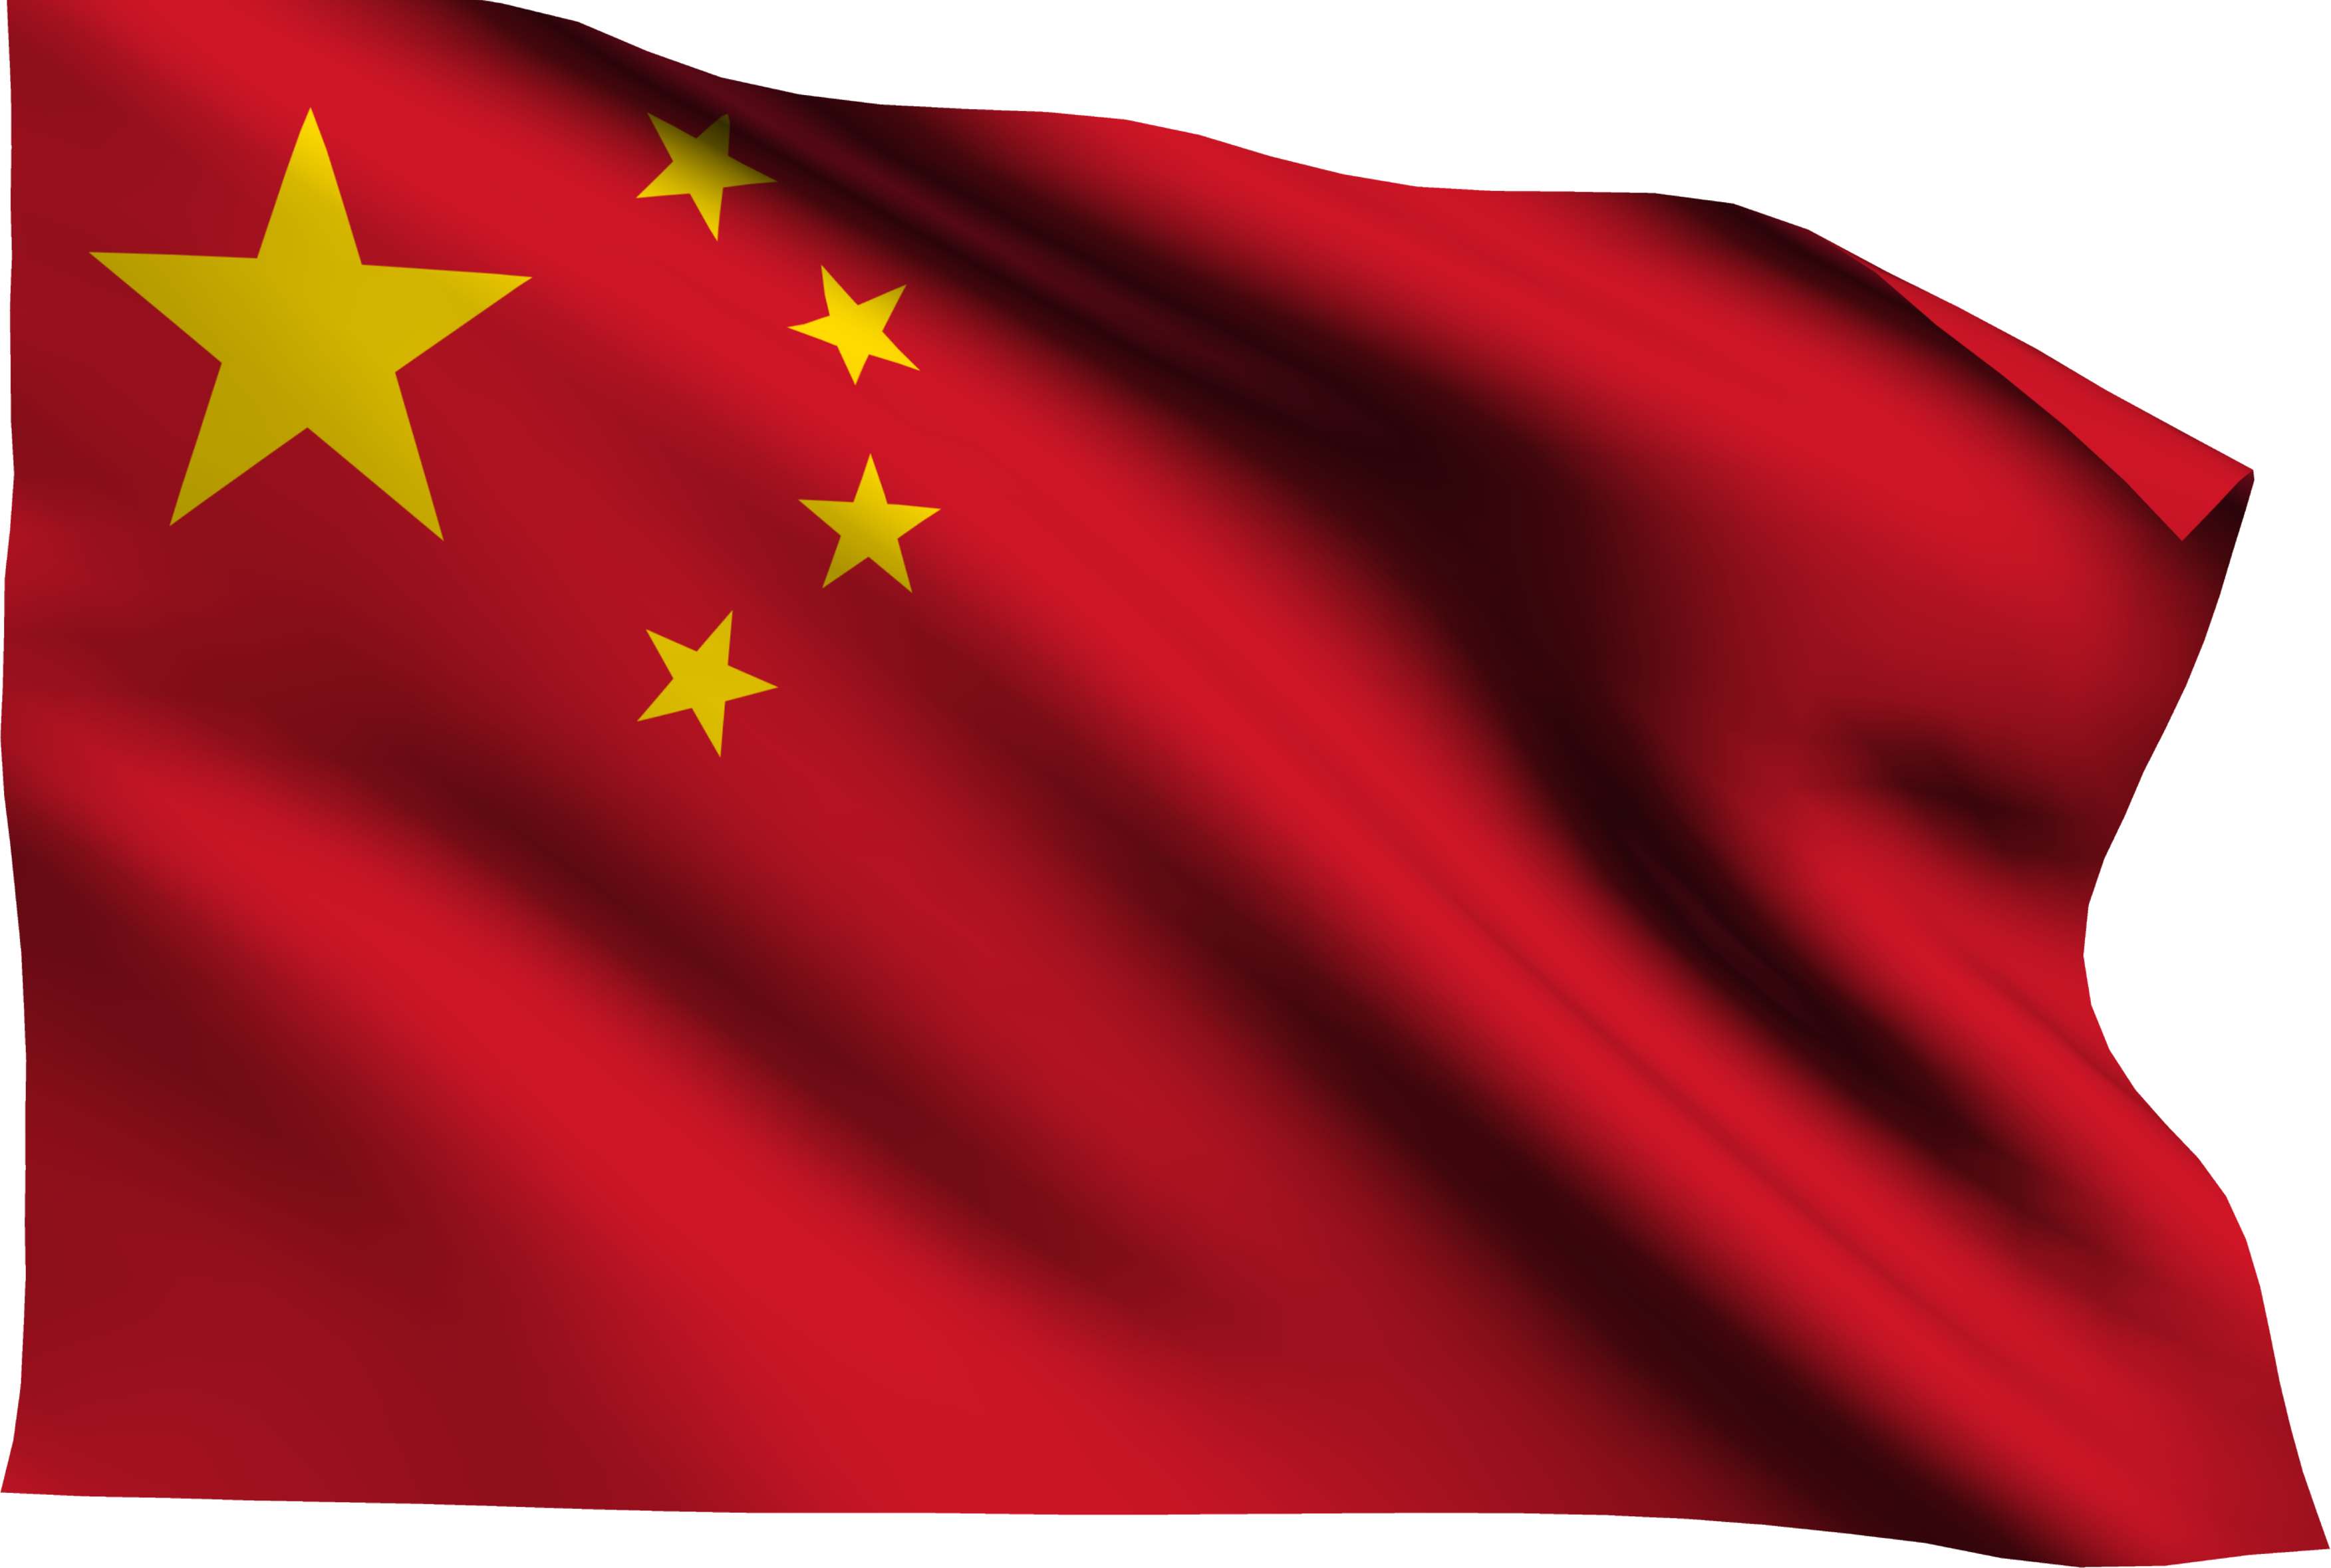 China Flag PNG Image